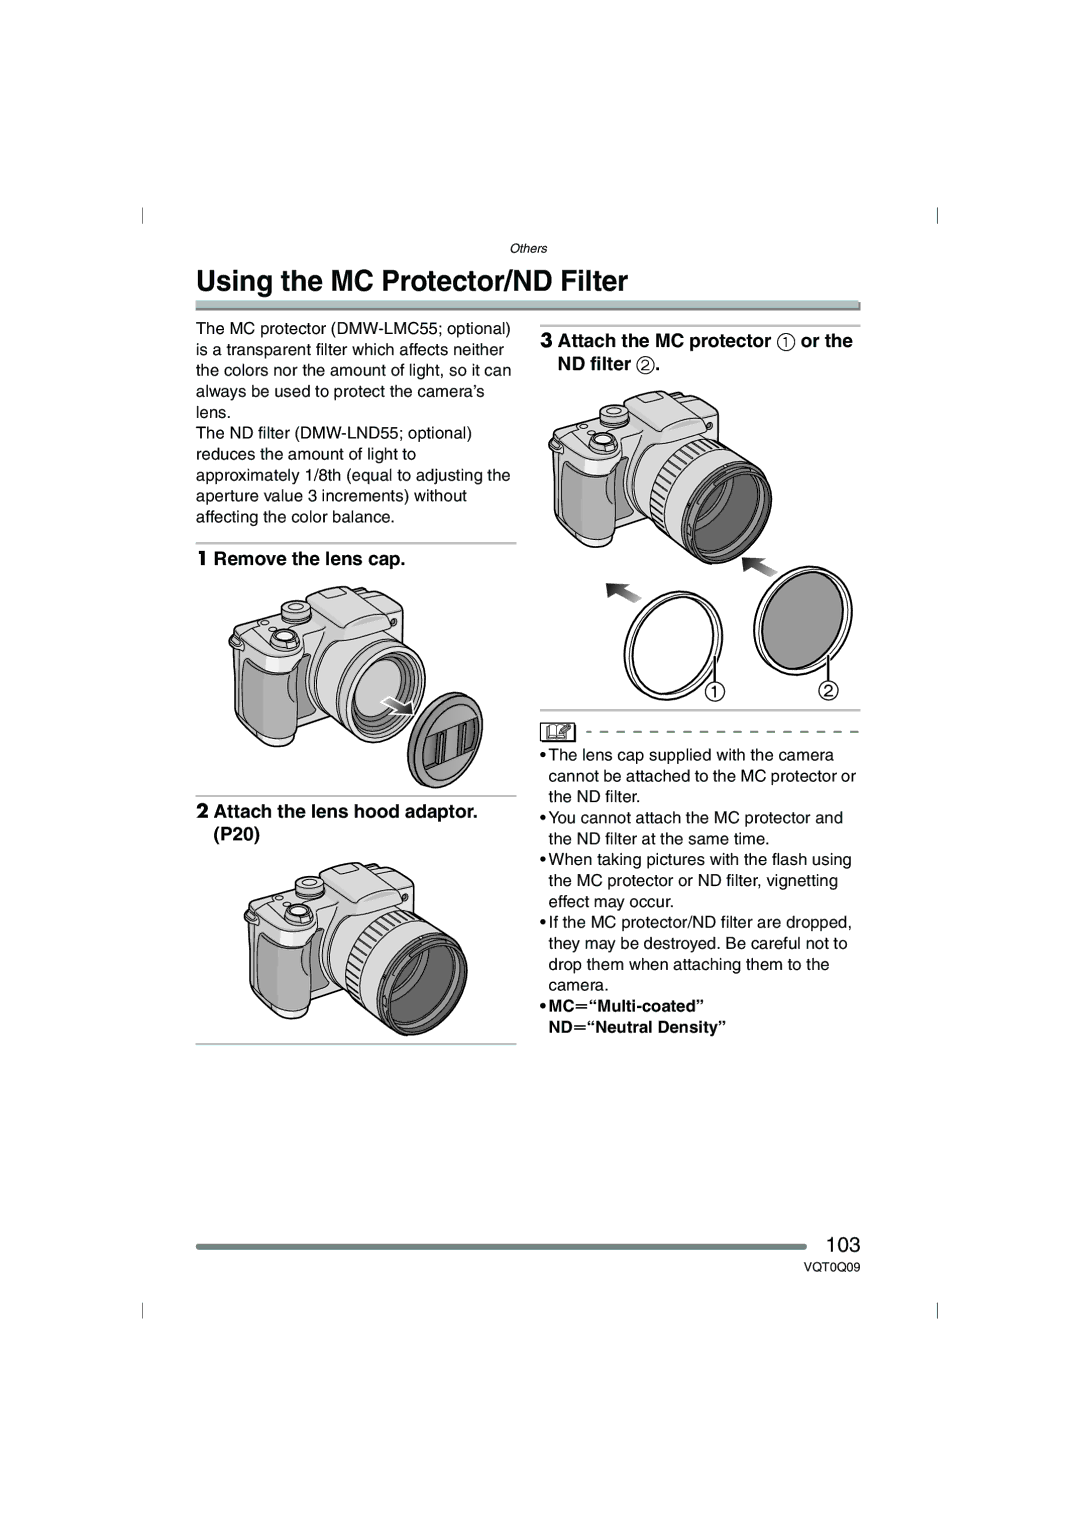 Panasonic DMC-FZ4PP, DMC-FZ5PP Using the MC Protector/ND Filter, 103, MCuMulti-coated NDuNeutral Density 